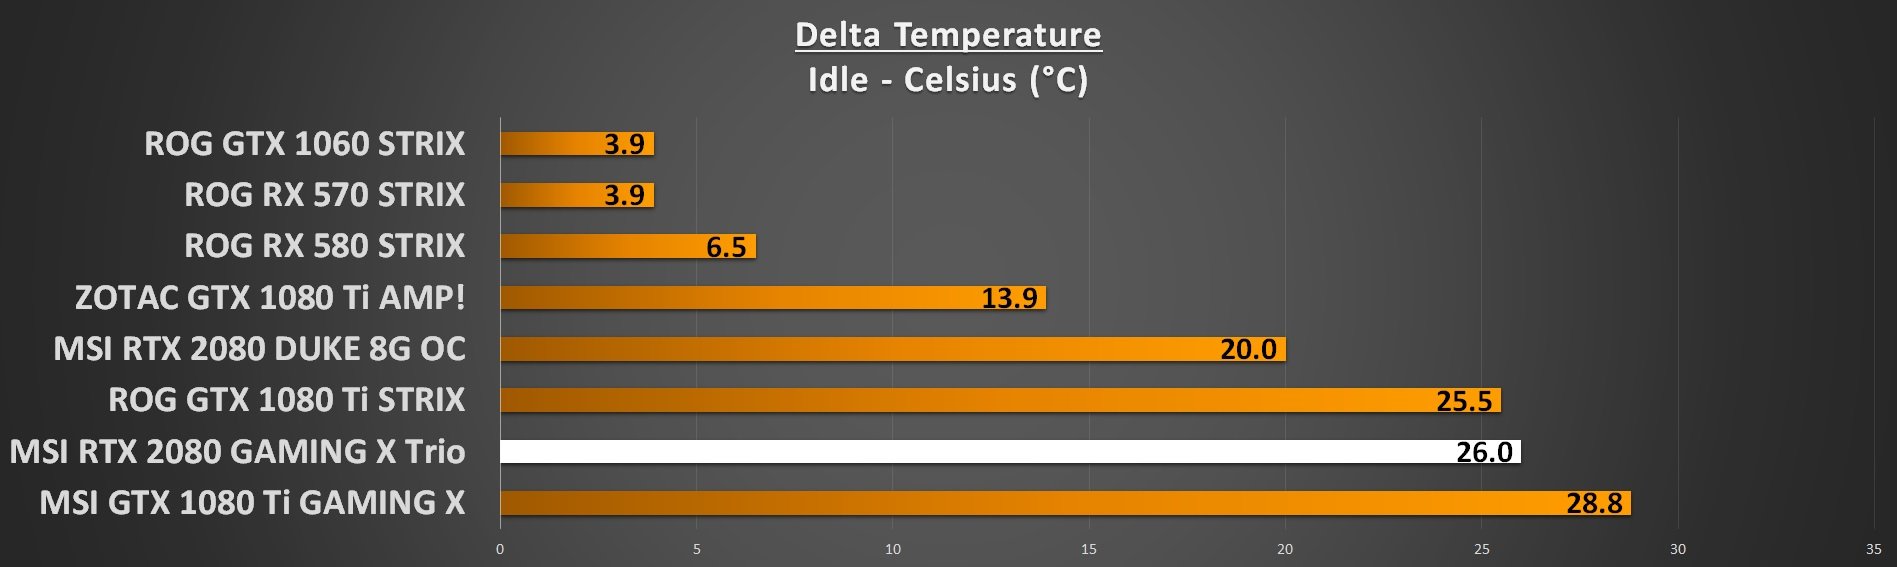 GPU Temperatures Idle